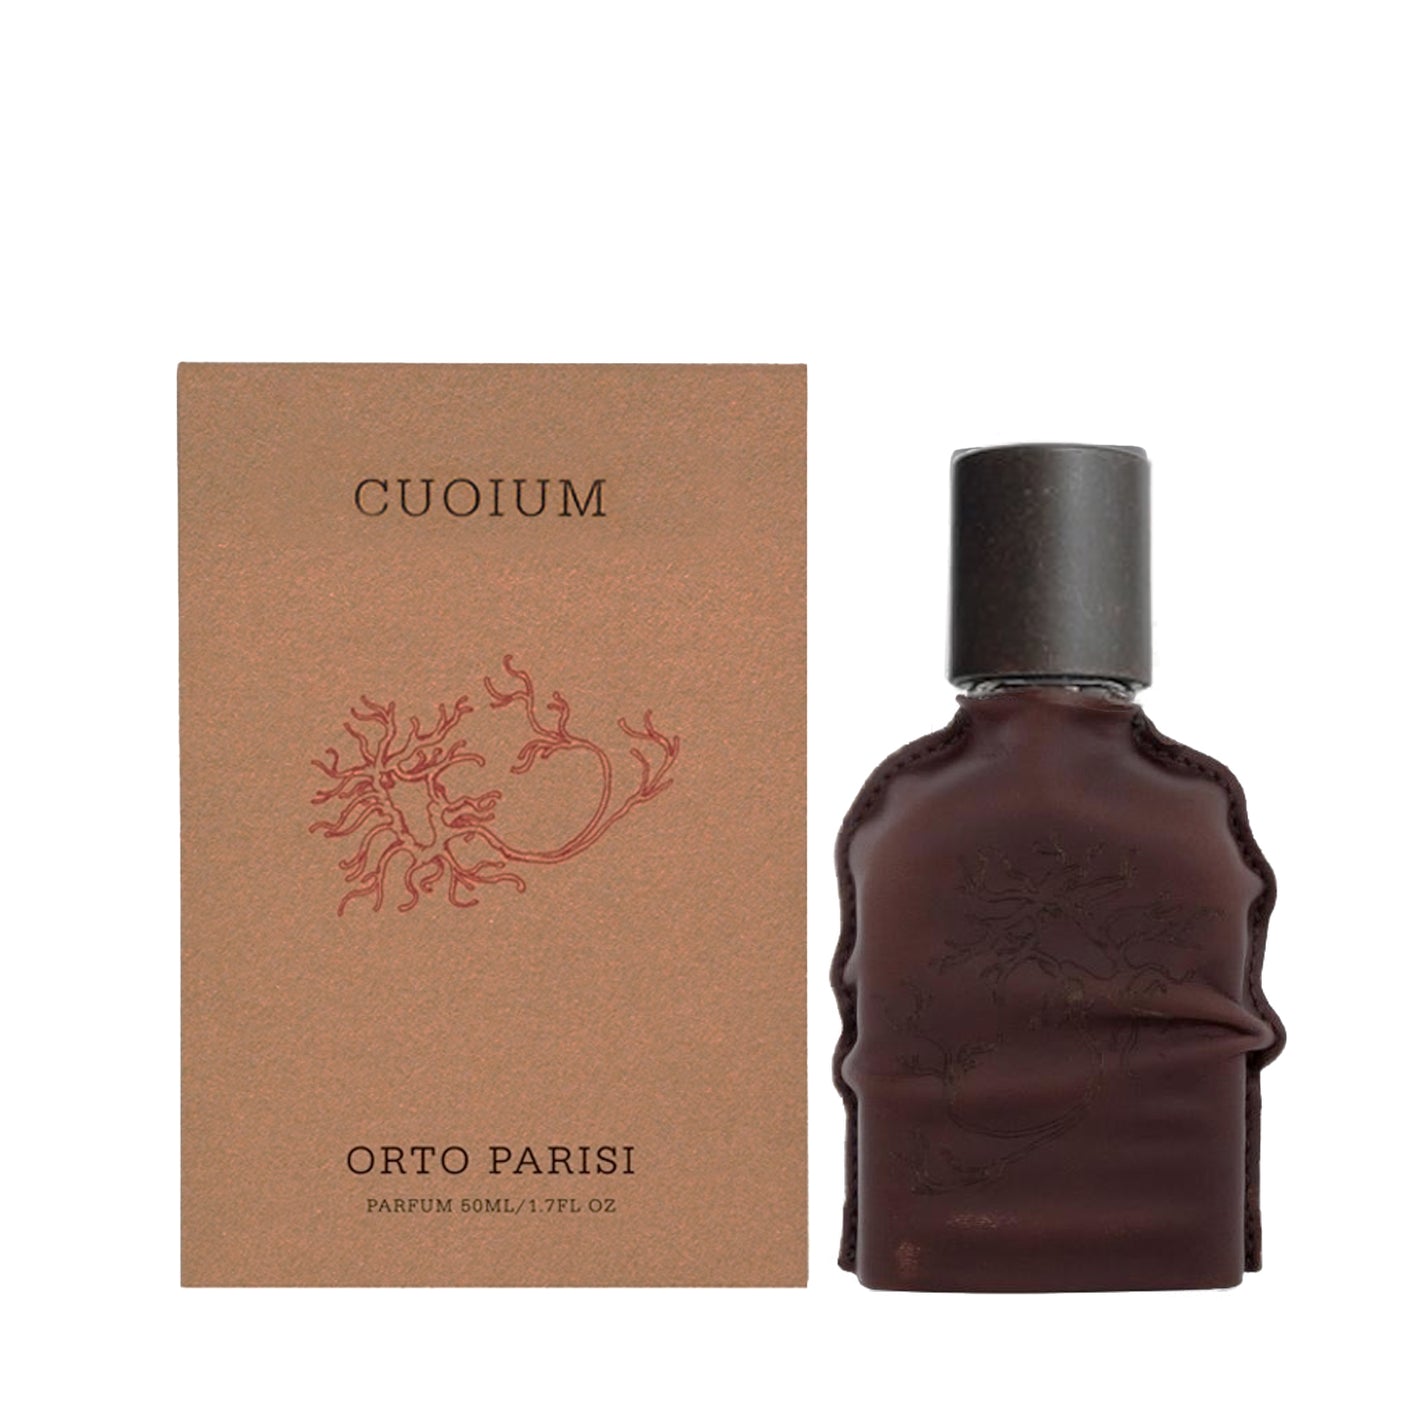 Orto Parisi Cuoium Parfum: Official Stockist